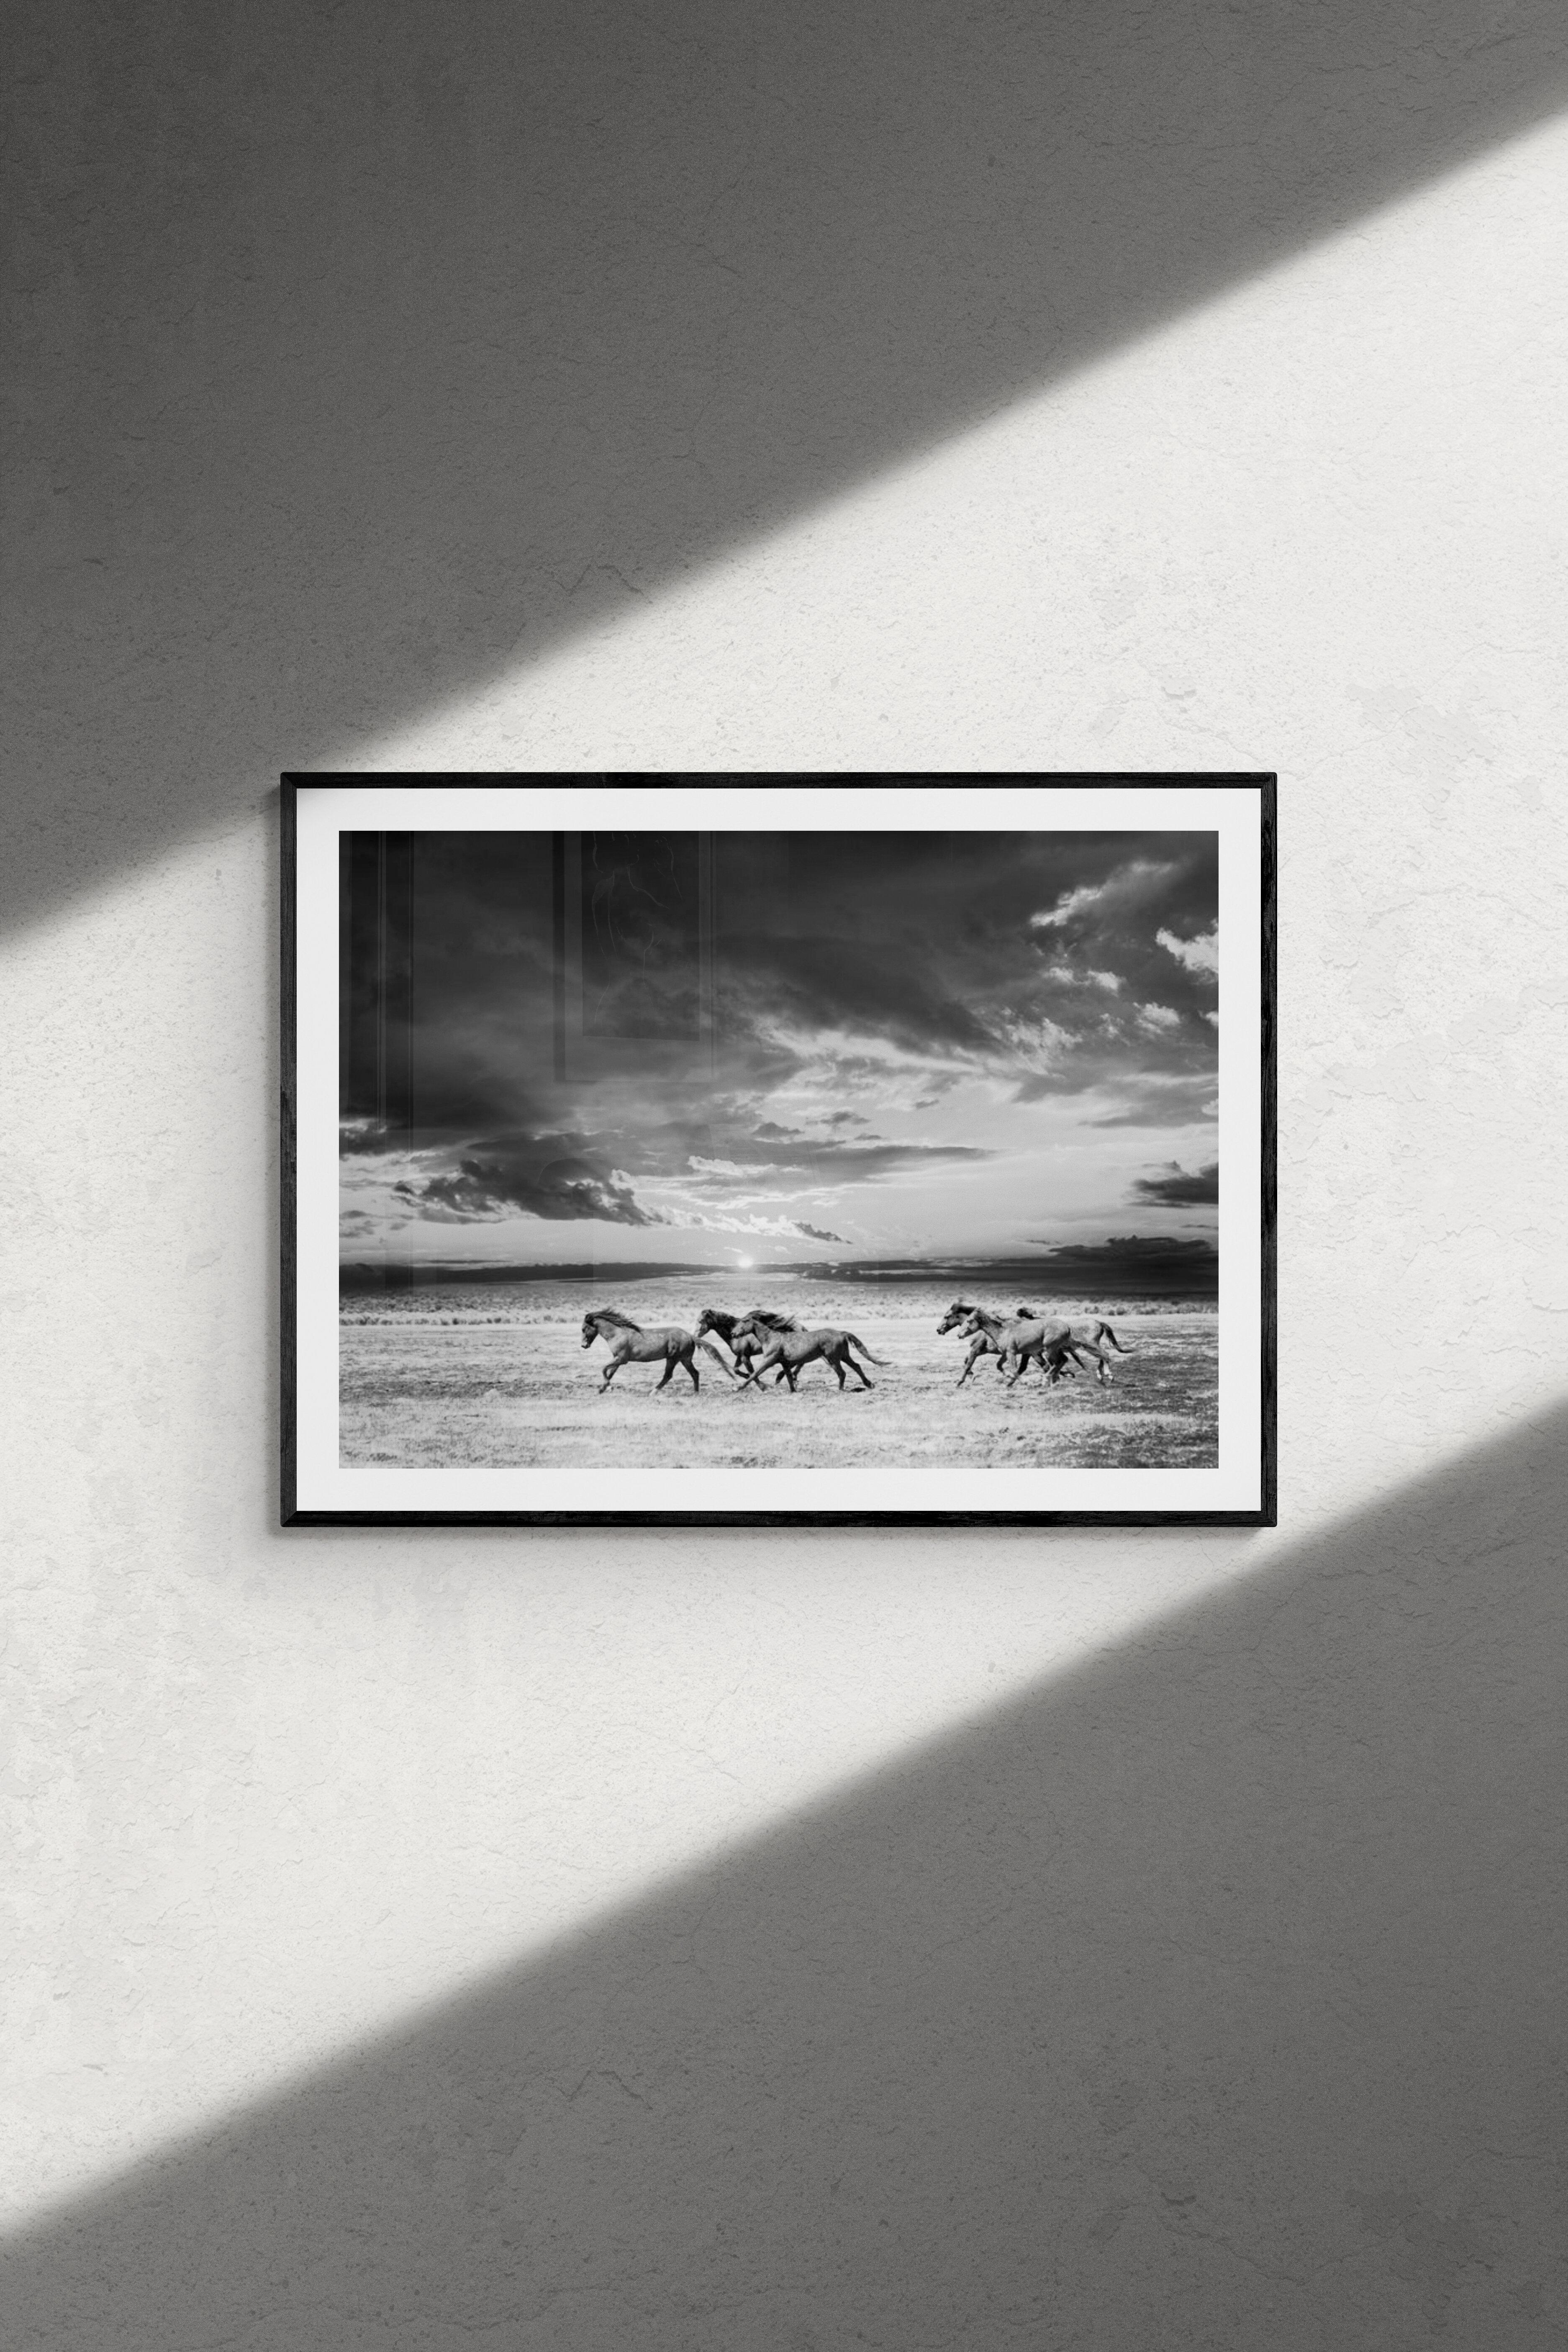 Chasing die Leuchte  28x40 -  Wildpferdefotografie – Fotografie Senfdruck – Print von Shane Russeck